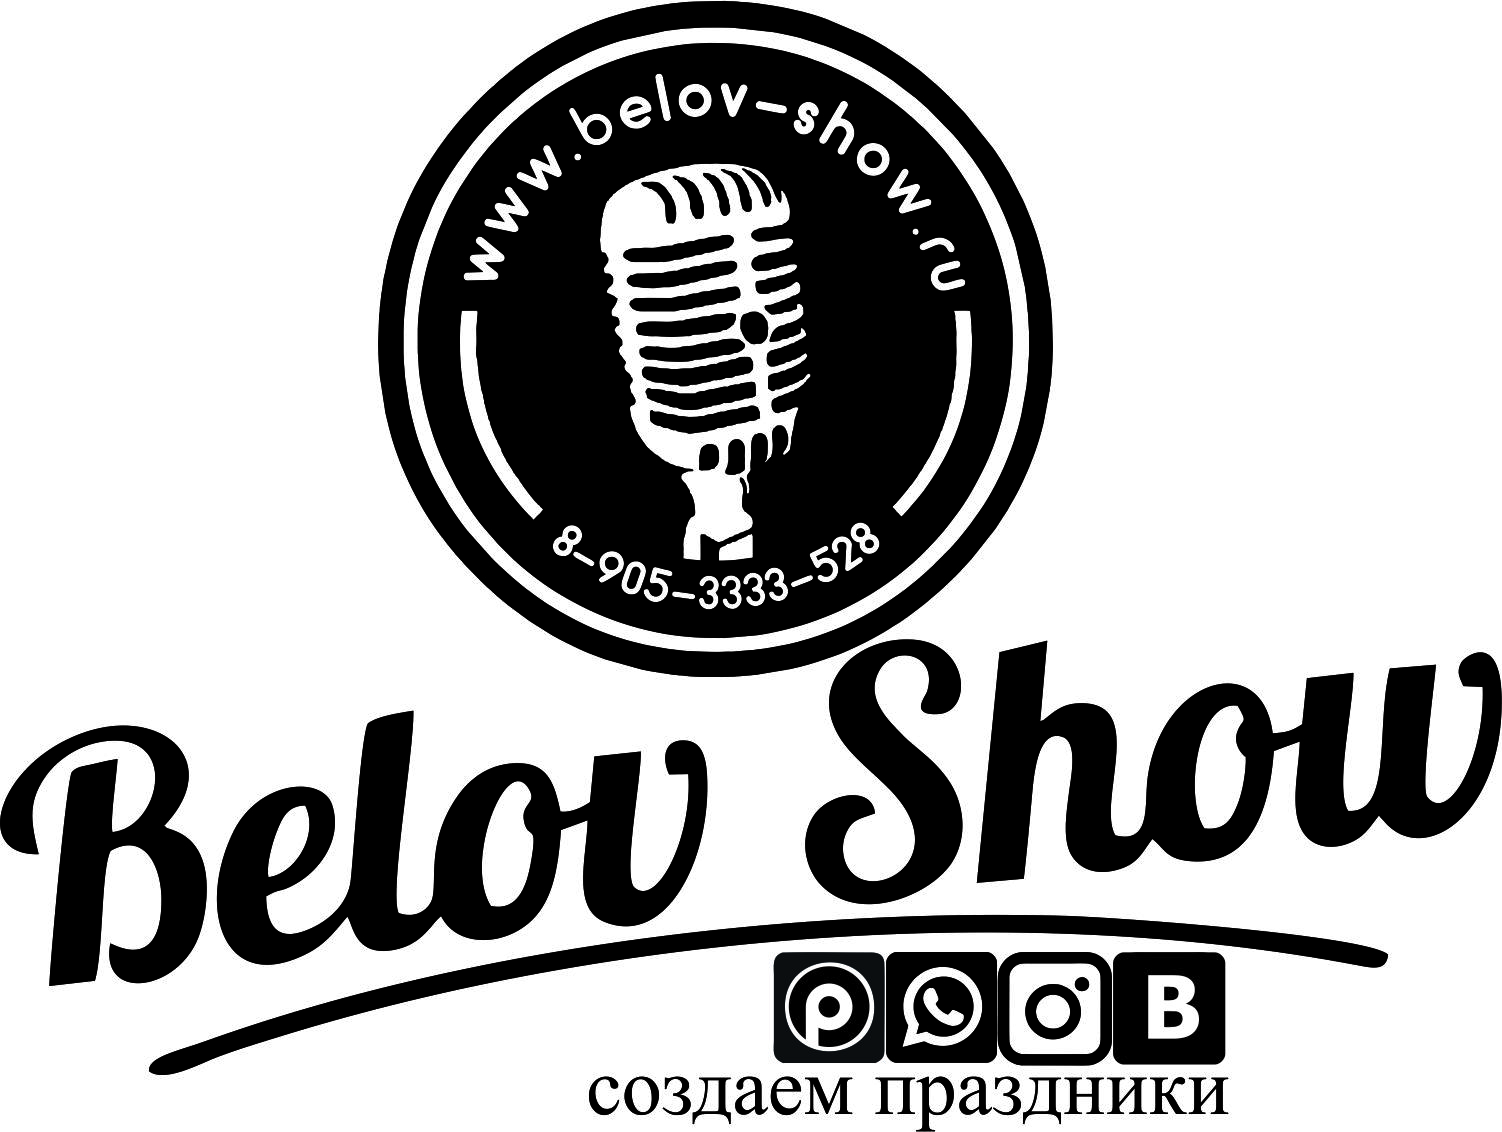 BELOV SHOW